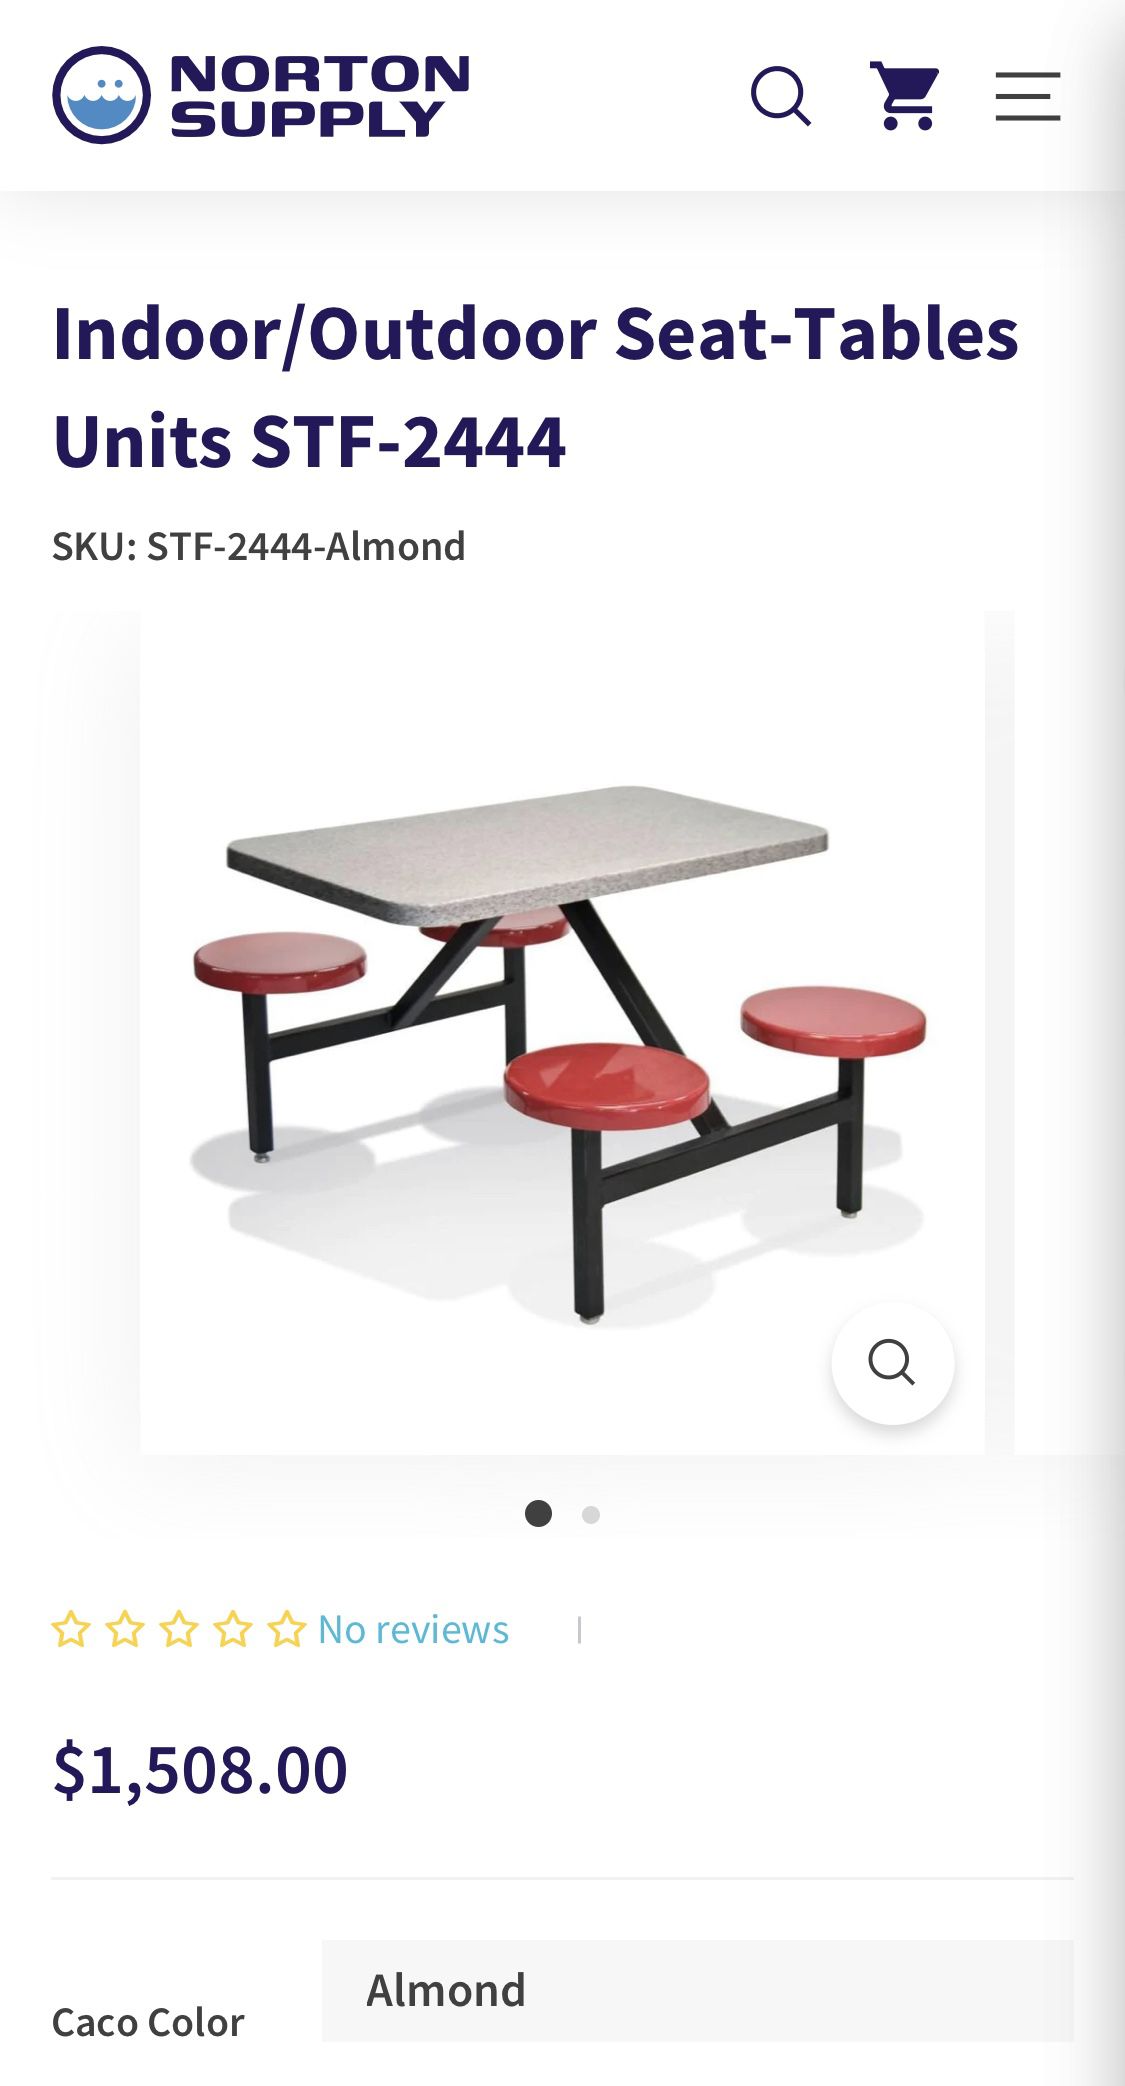 Indoor/Outdoor Seat-Tables